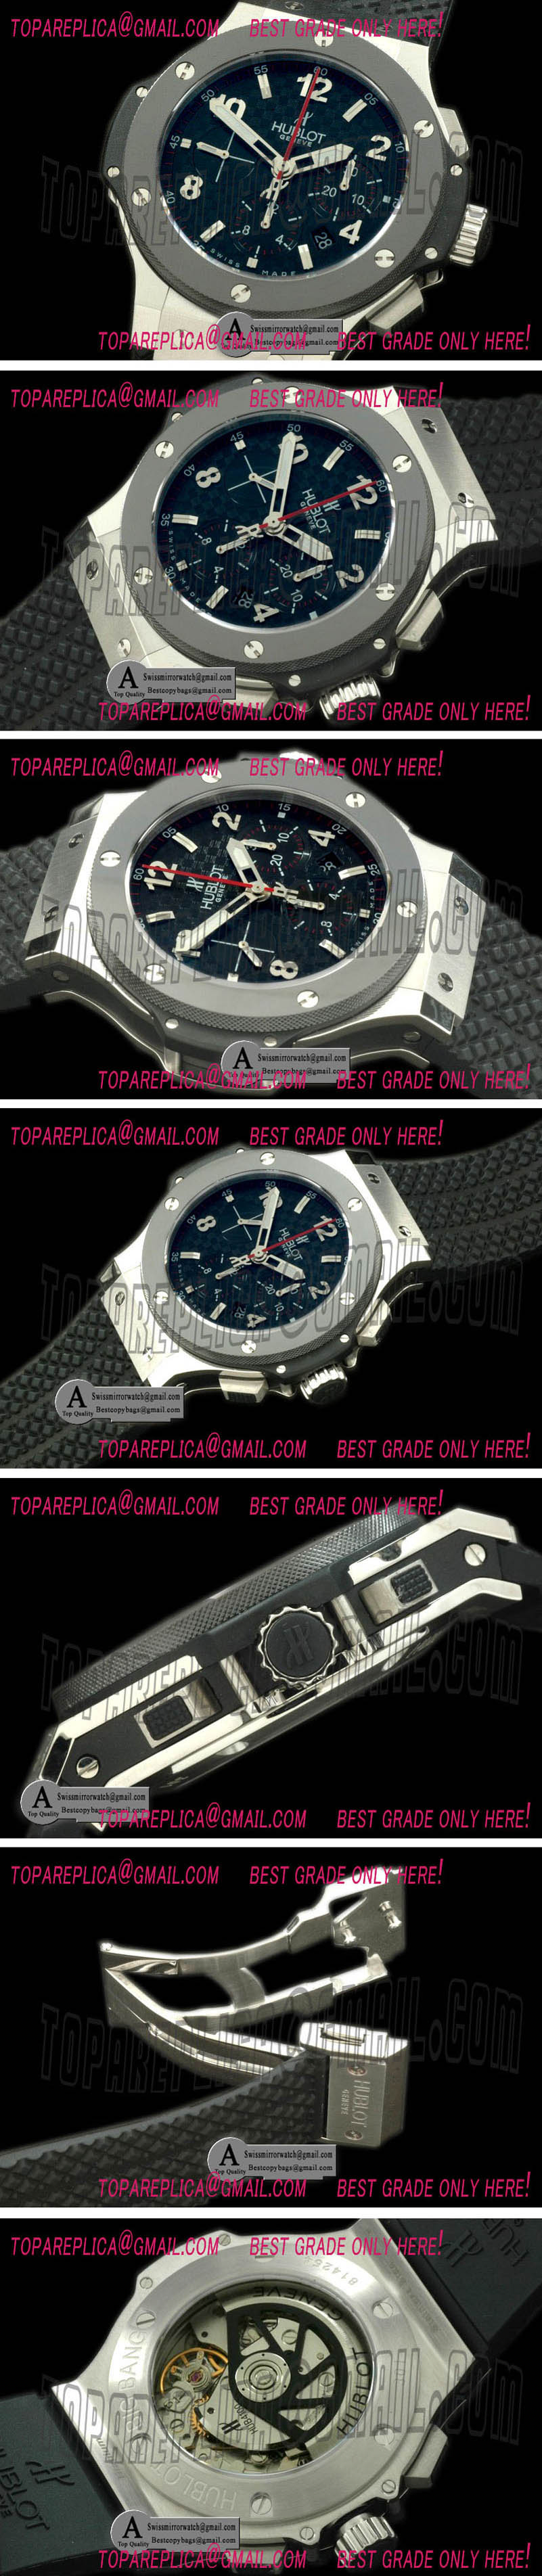 Replica Hublot Big Bang 301.SB.131.SB SS/Ceramic Carbon Fibre Black A-7750 Watches